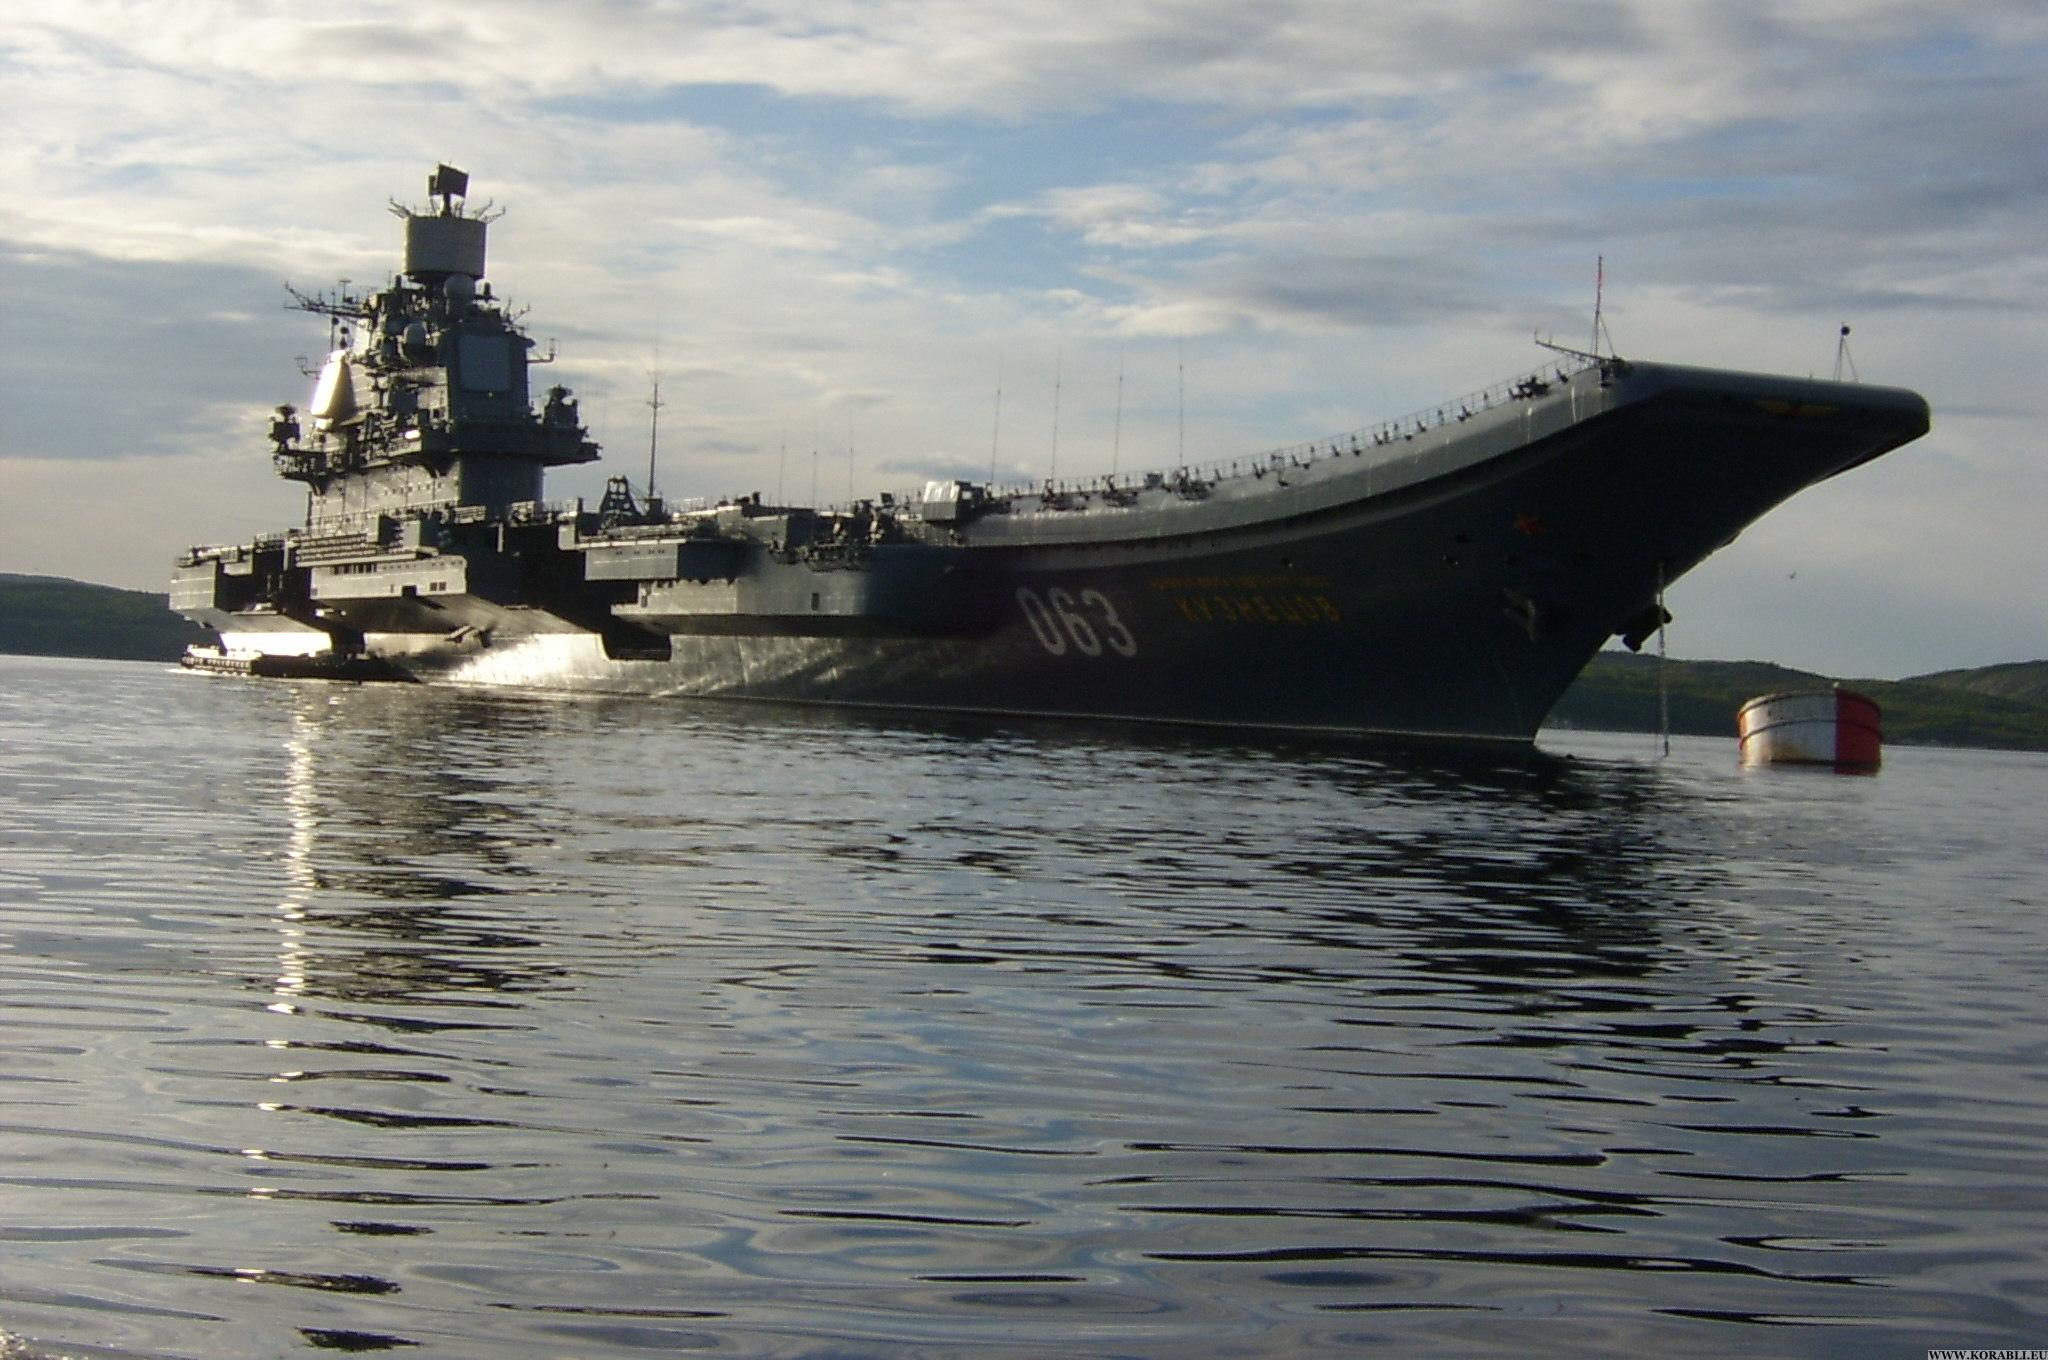 Х ф адмирал кузнецов